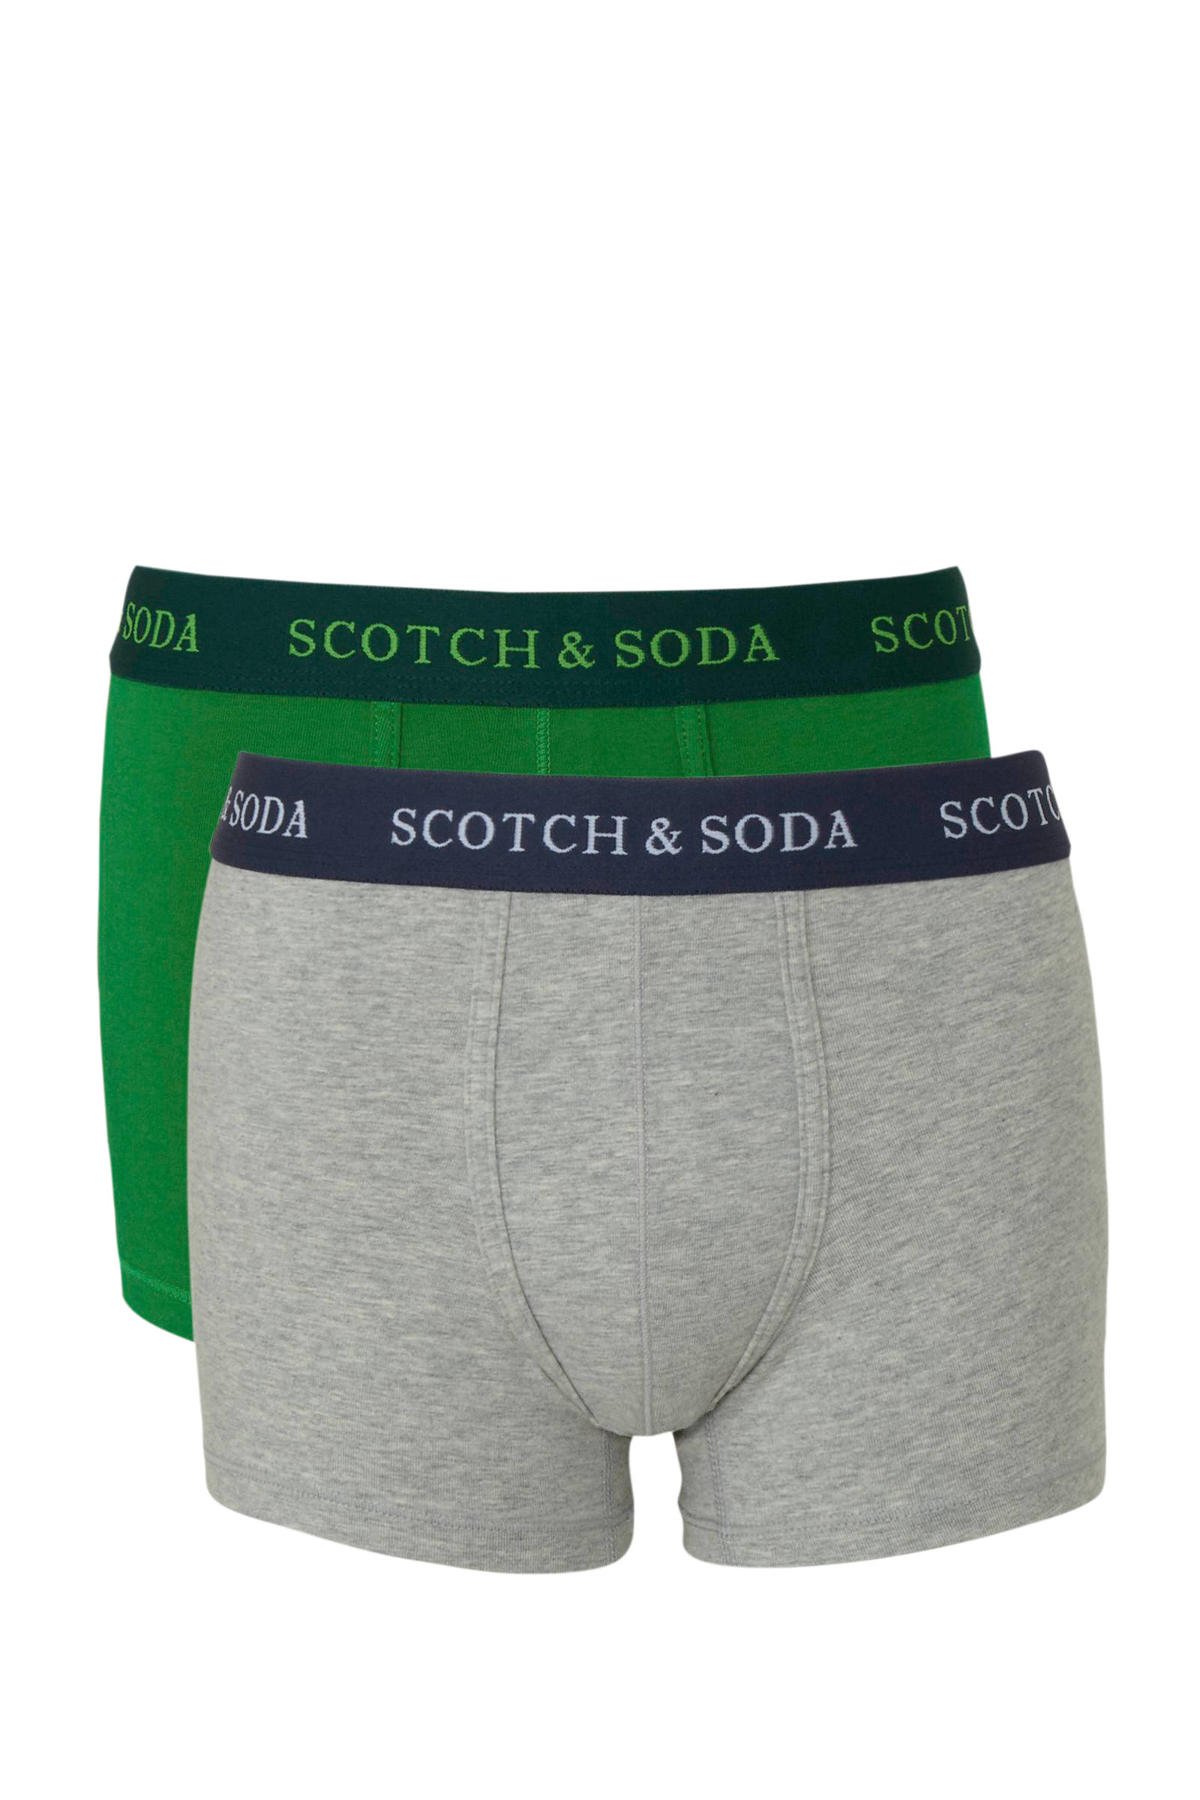 Haat Perth plotseling Scotch & Soda boxershort - set van 2 groen/grijs melange | wehkamp